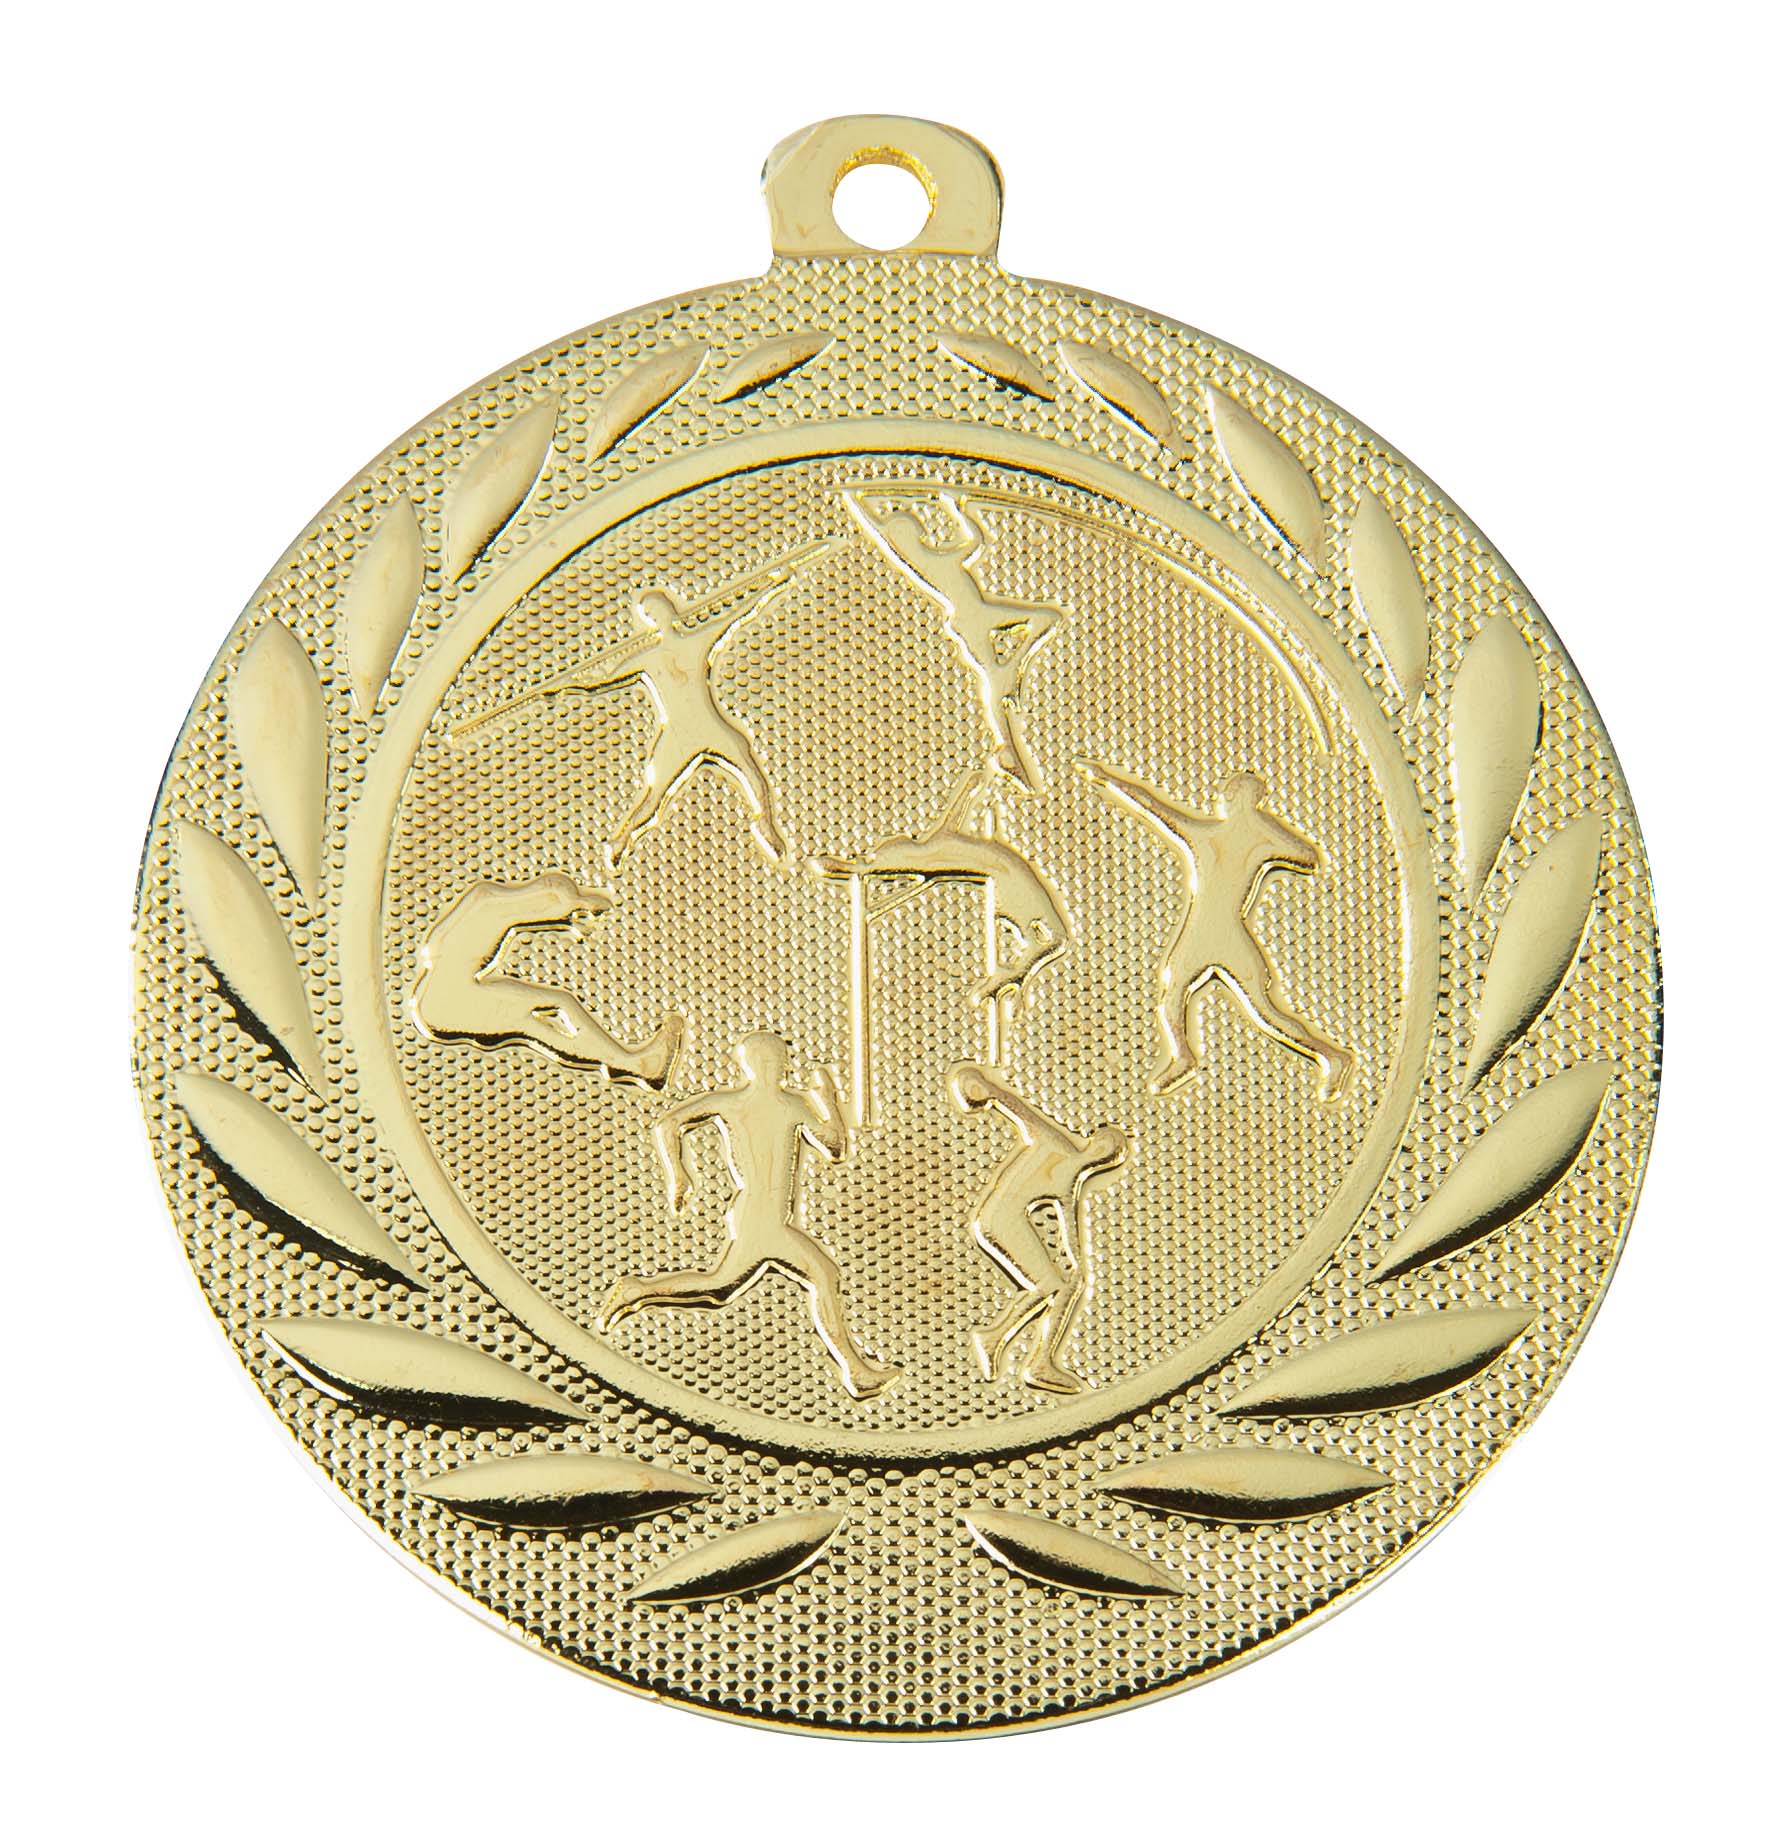 Leichtathletik-Medaille DI5000K inkl. Band und Beschriftung Gold Unmontiert